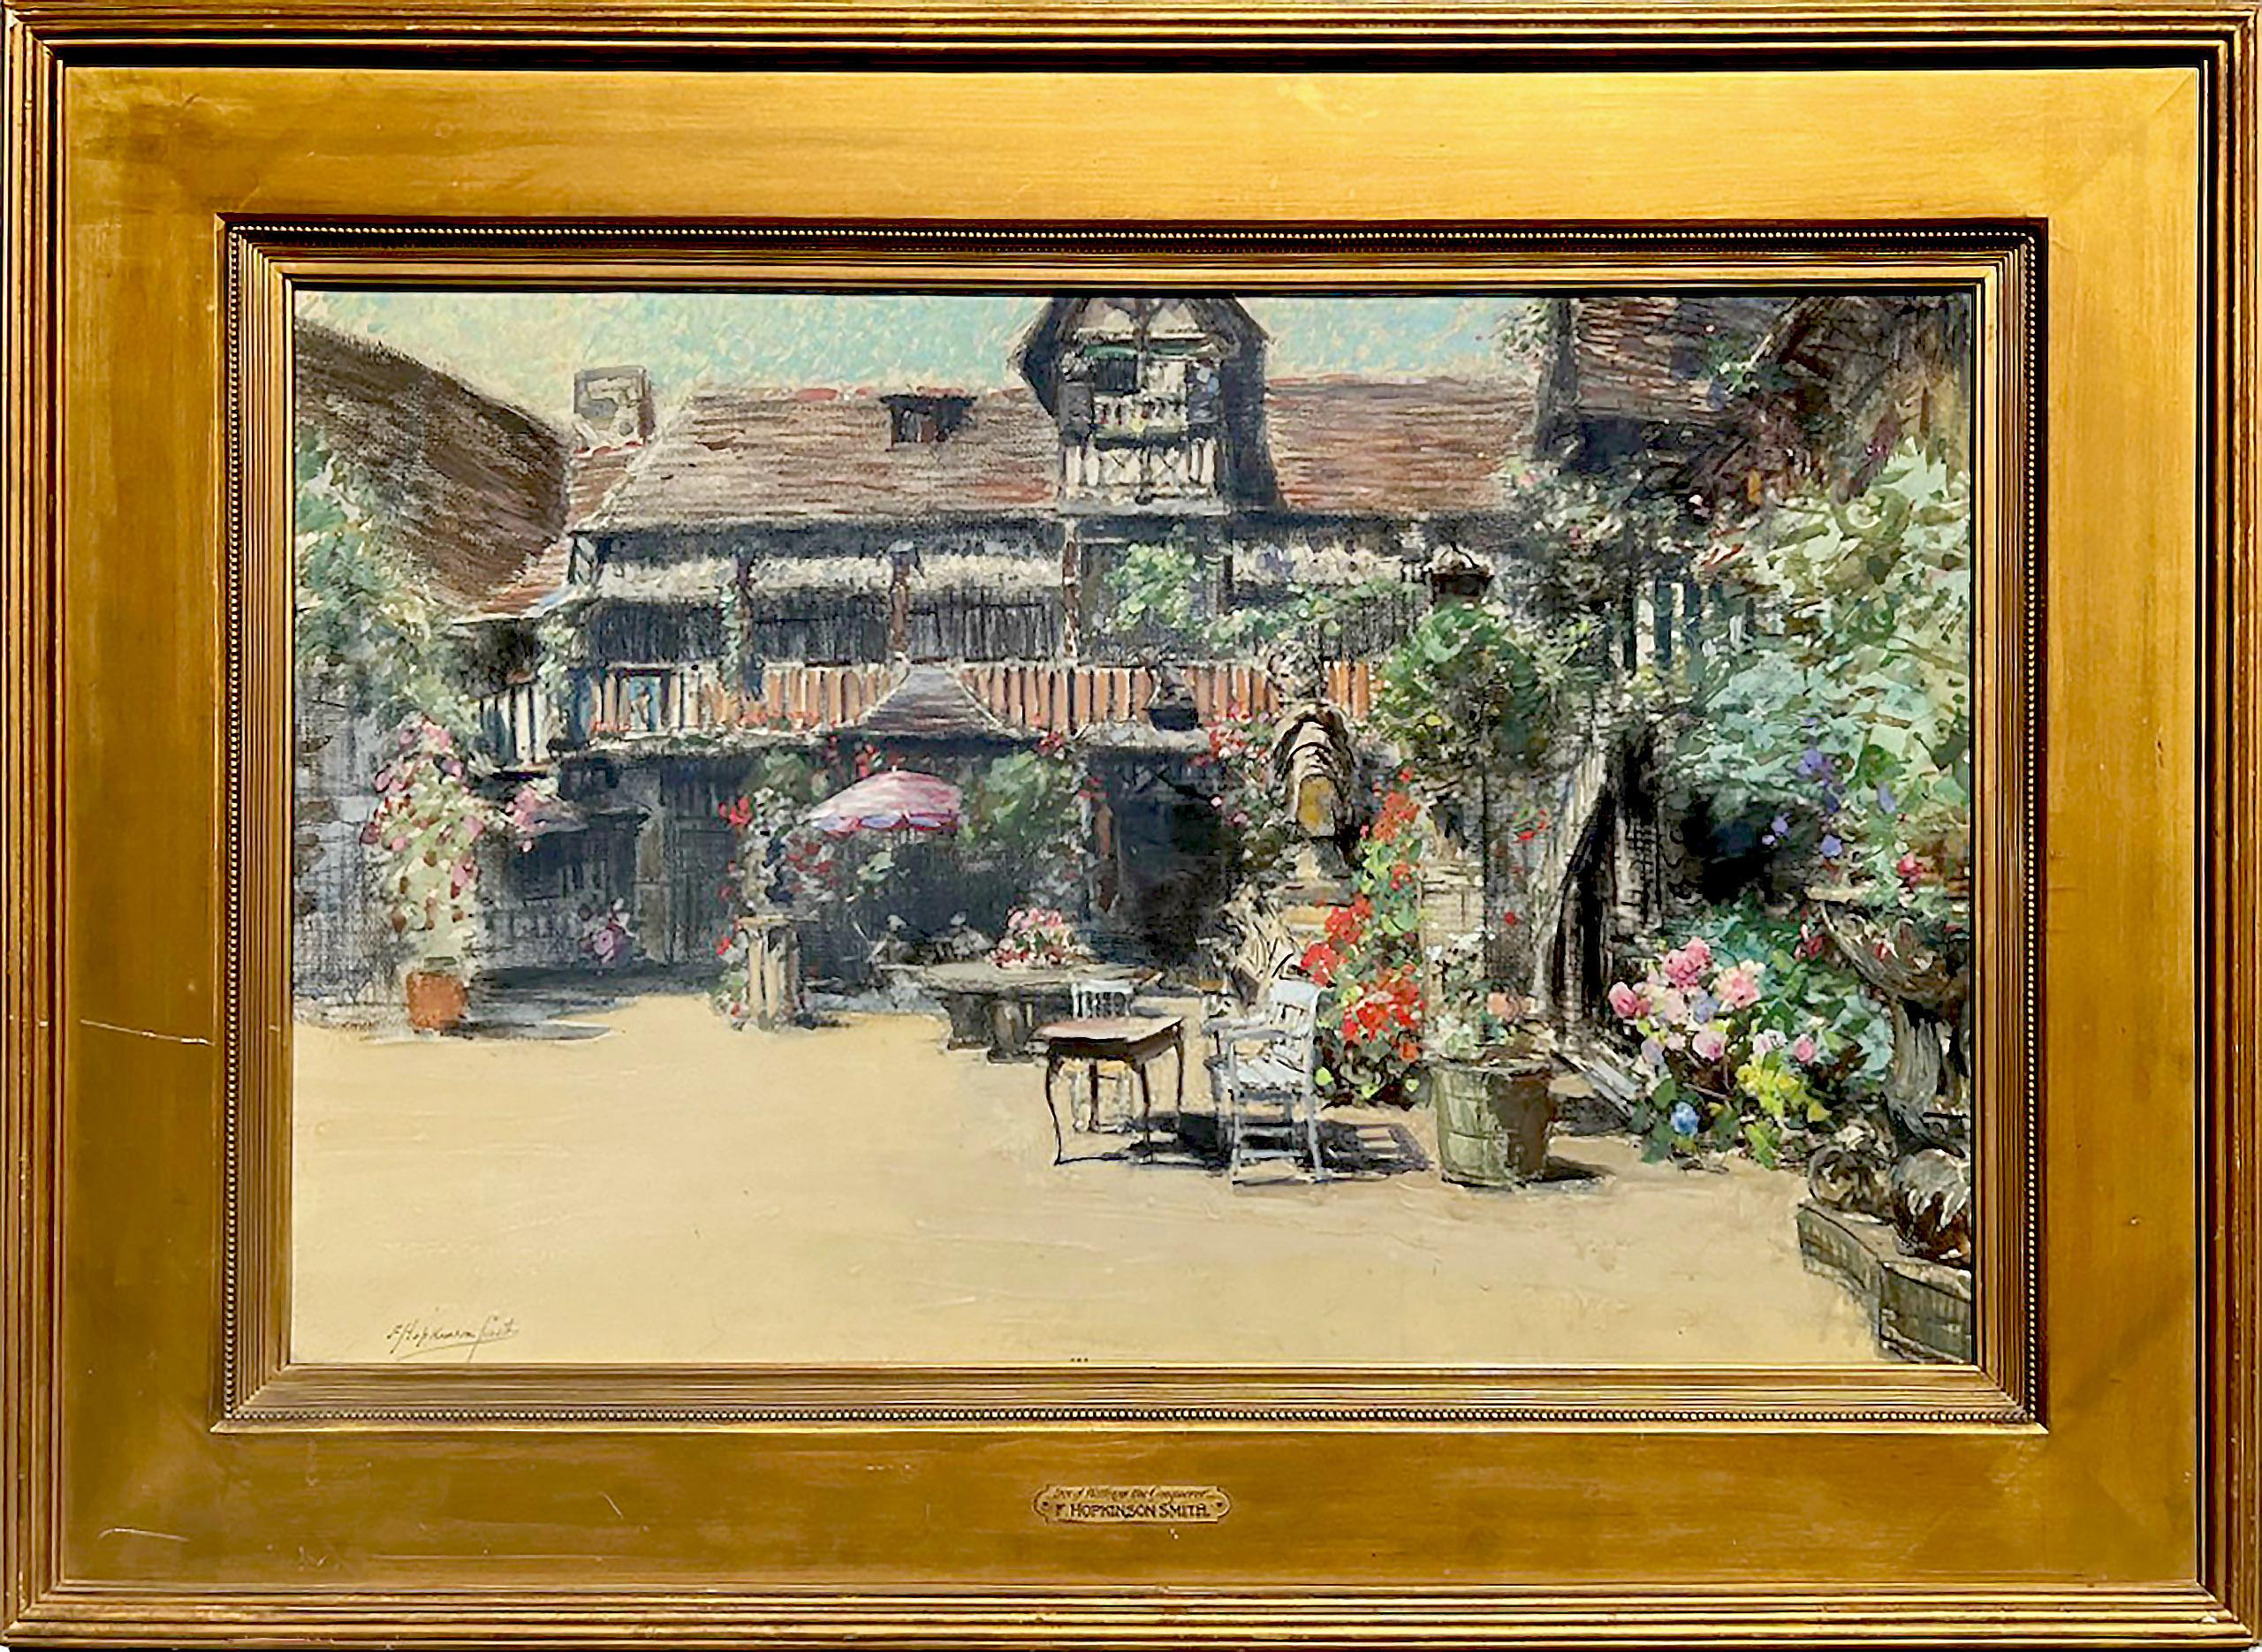 Das Gemälde "The Courtyard at the Inn of William the Conqueror" des amerikanischen Künstlers Francis Hopkinson Smith (1838-1915), ca. 1905-1910, besteht aus Aquarell, Gouache und Kohle auf Papier. Das Gemälde misst 24 x 36 Zoll und ist unten links